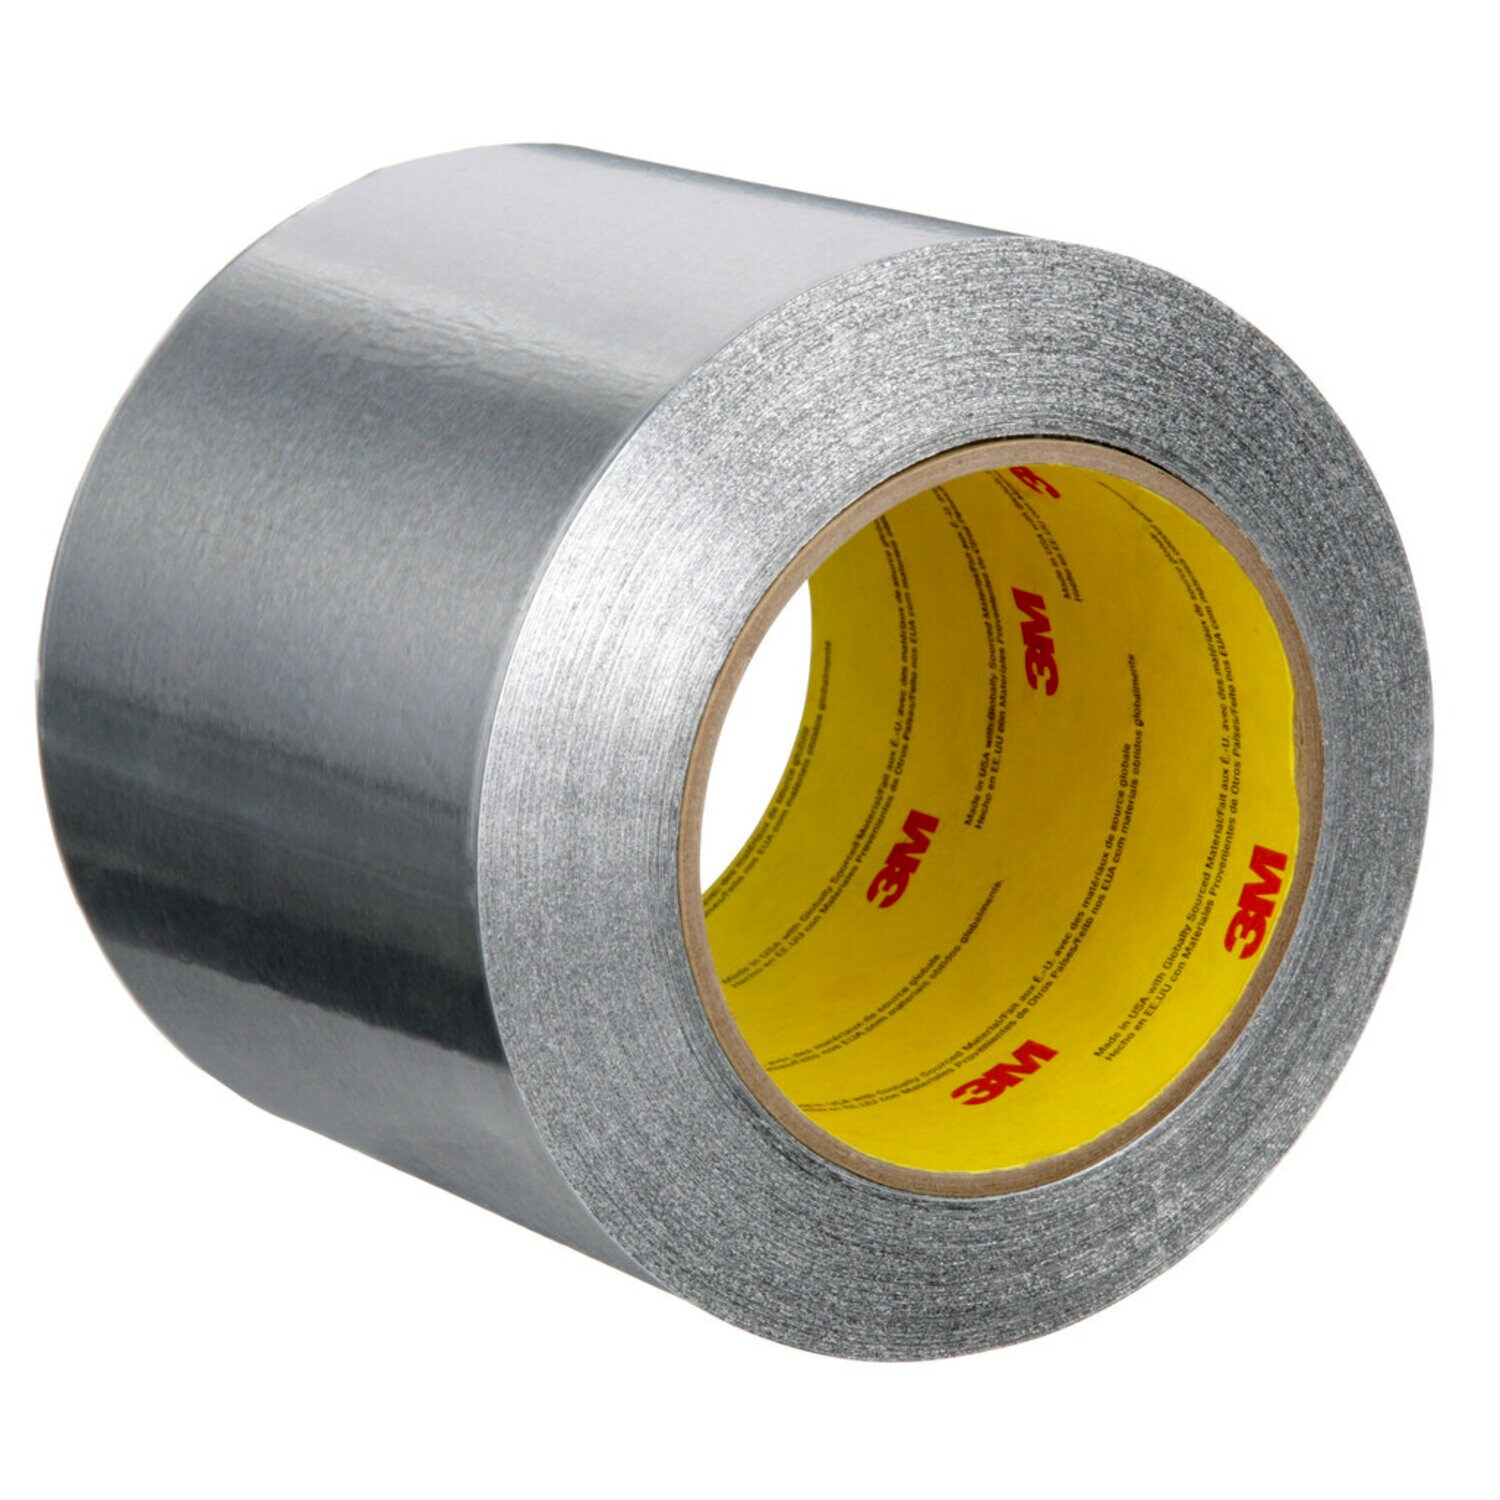 7100053593 - 3M Aluminum Foil Tape 425, Silver, 6 in x 60 yd, 4.6 mil, 2 rolls per
case